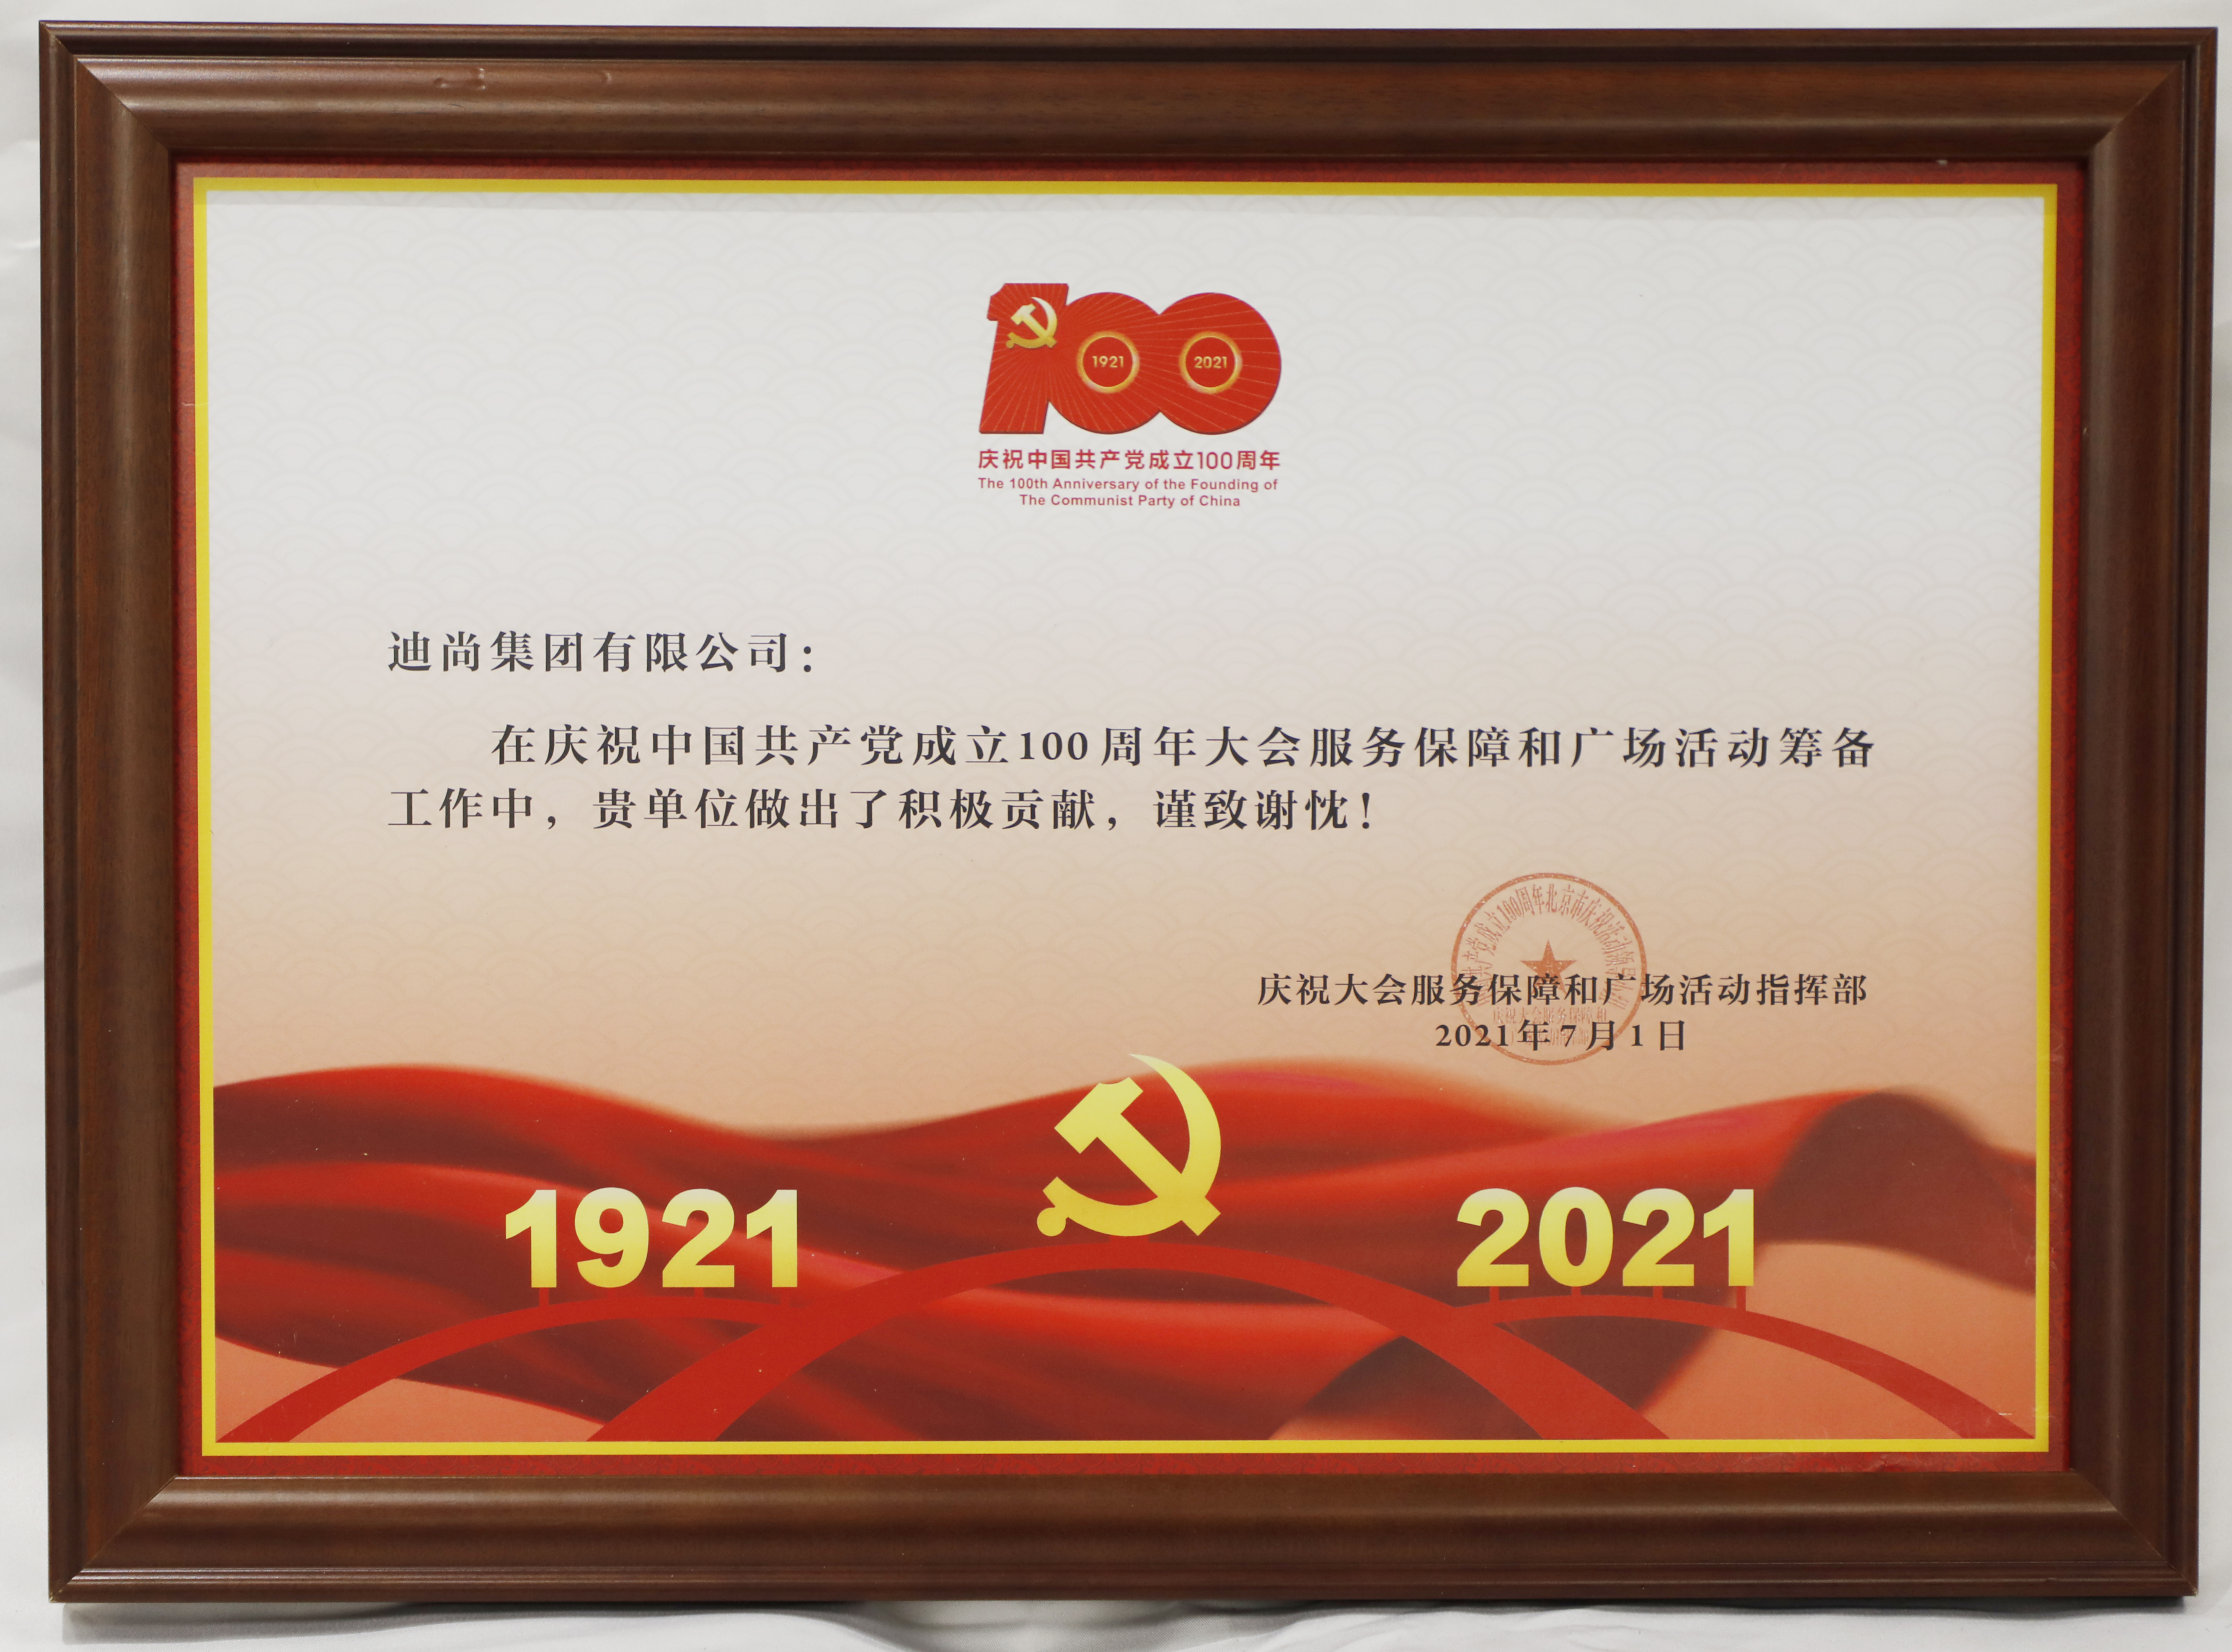 20210701-万象城AWC集团-庆祝中国共产党成立100周年大会服务保障和广场活动筹备工作-感谢信-庆祝大会服务保障和广场活动指挥部.JPG